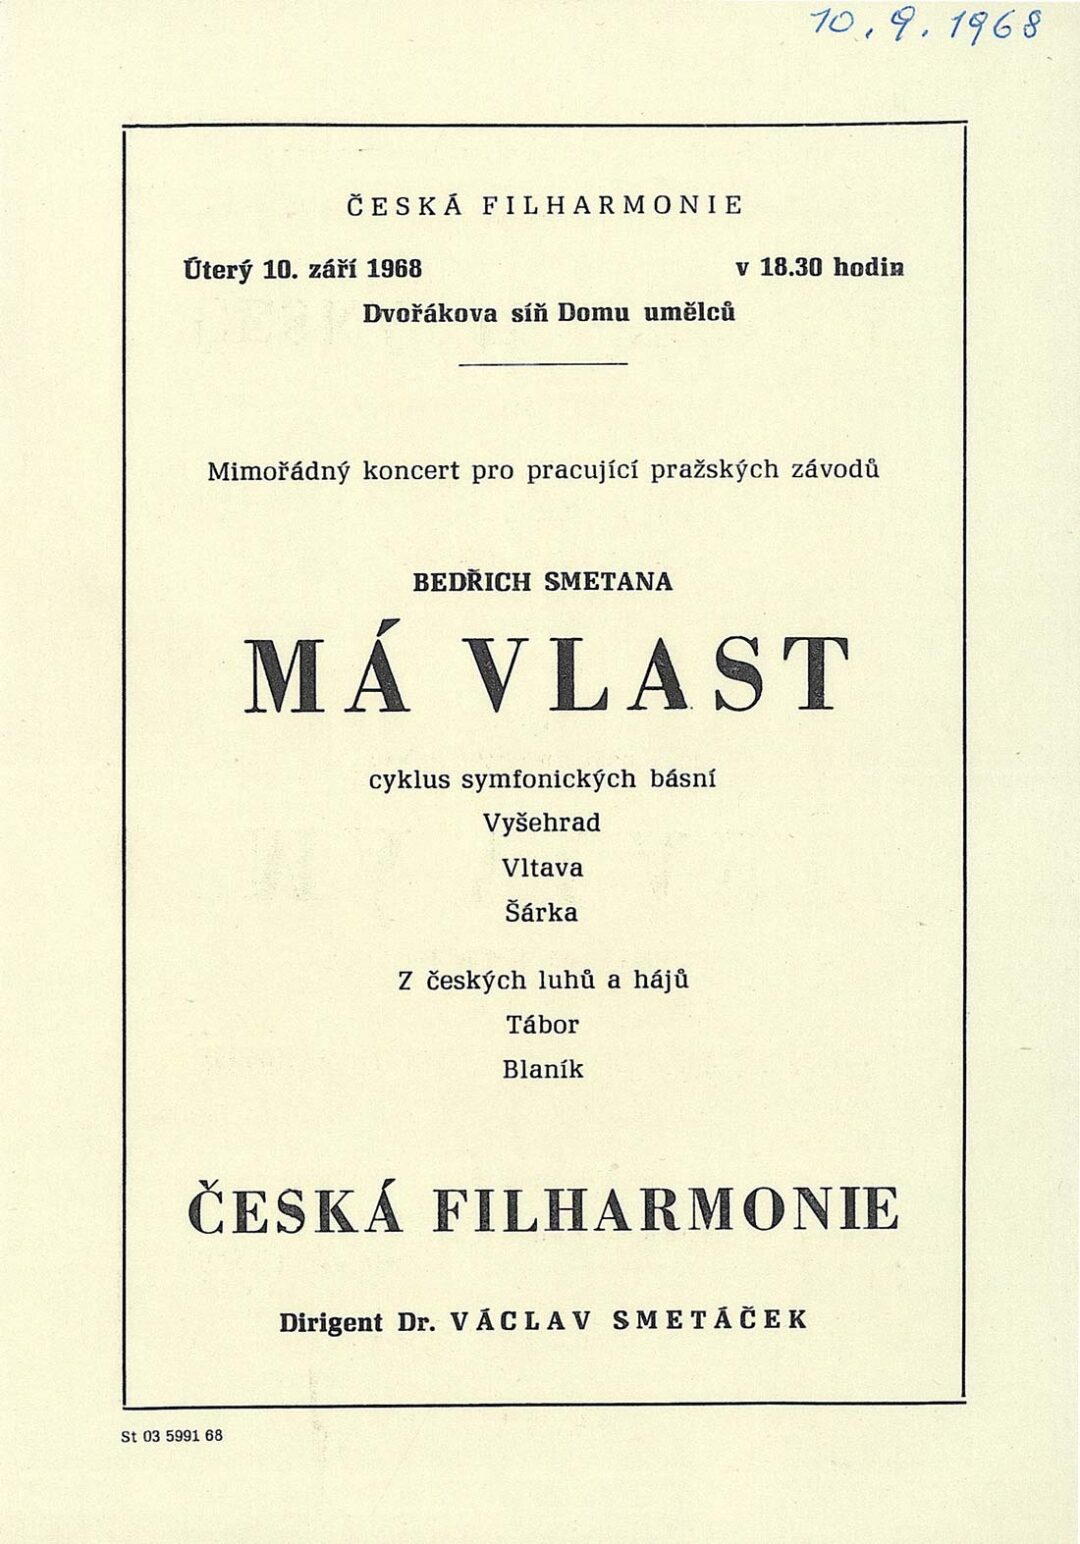 1968 │ po okupaci hrála Česká filharmonie Mou vlast po celé zemi